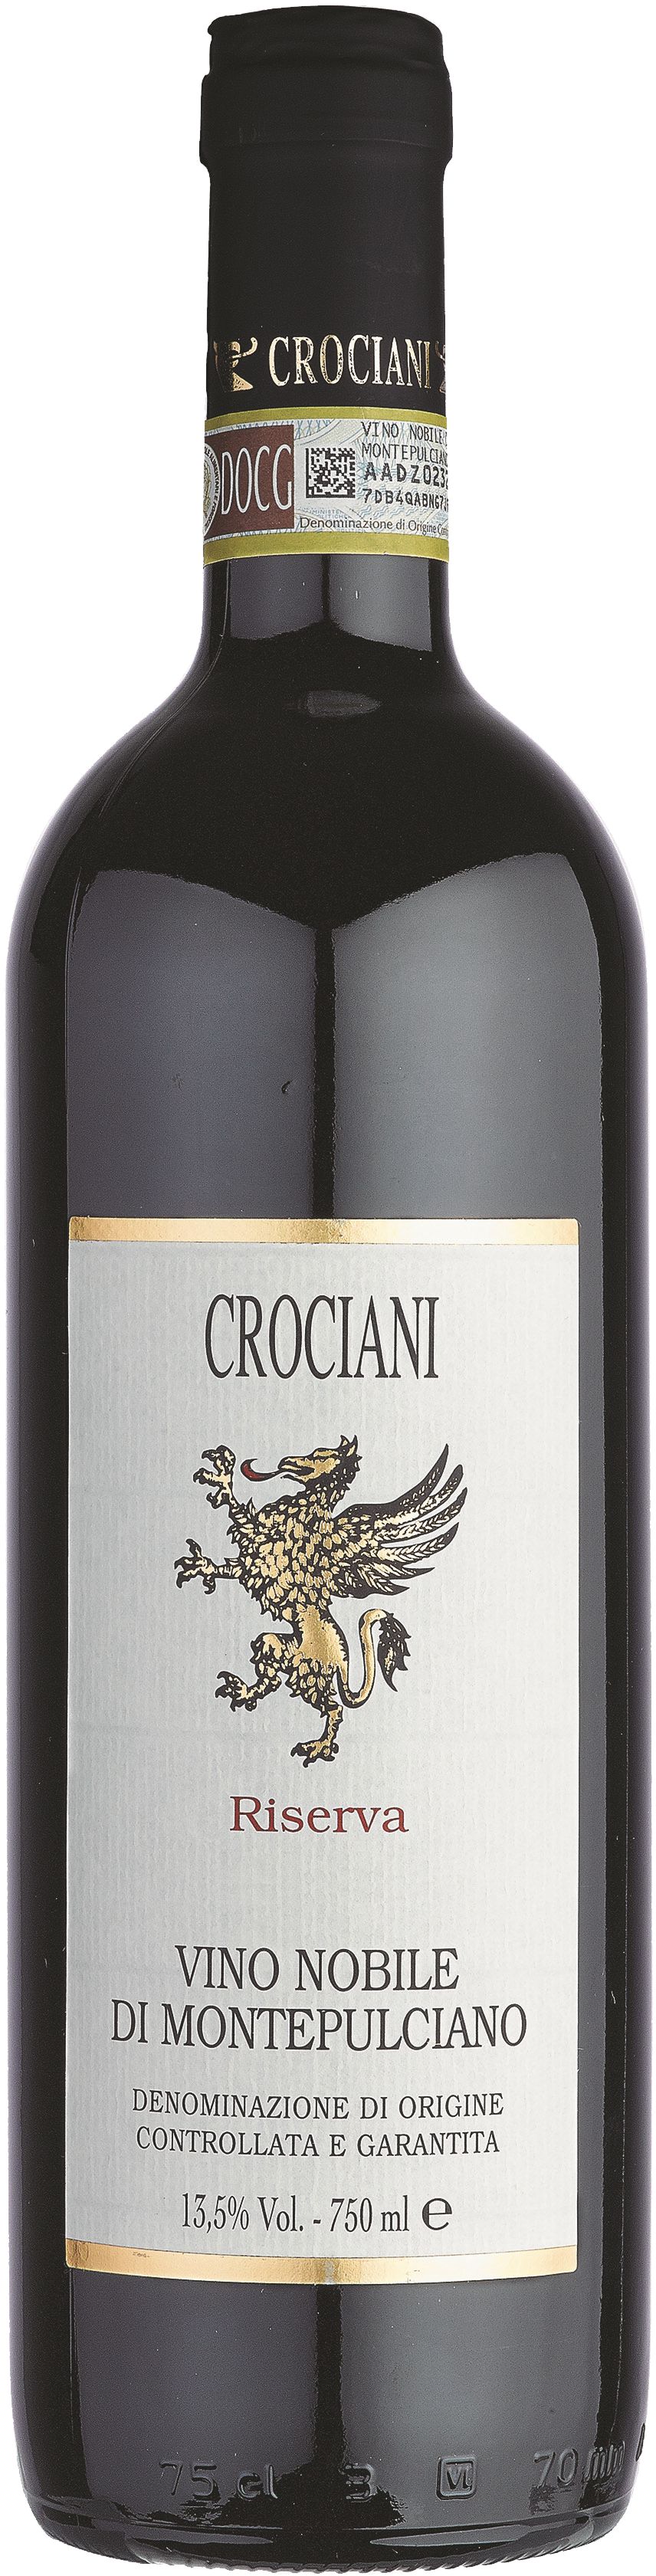 Crociani Vino Nobile di Montepulciano Riserva DOCG 2019